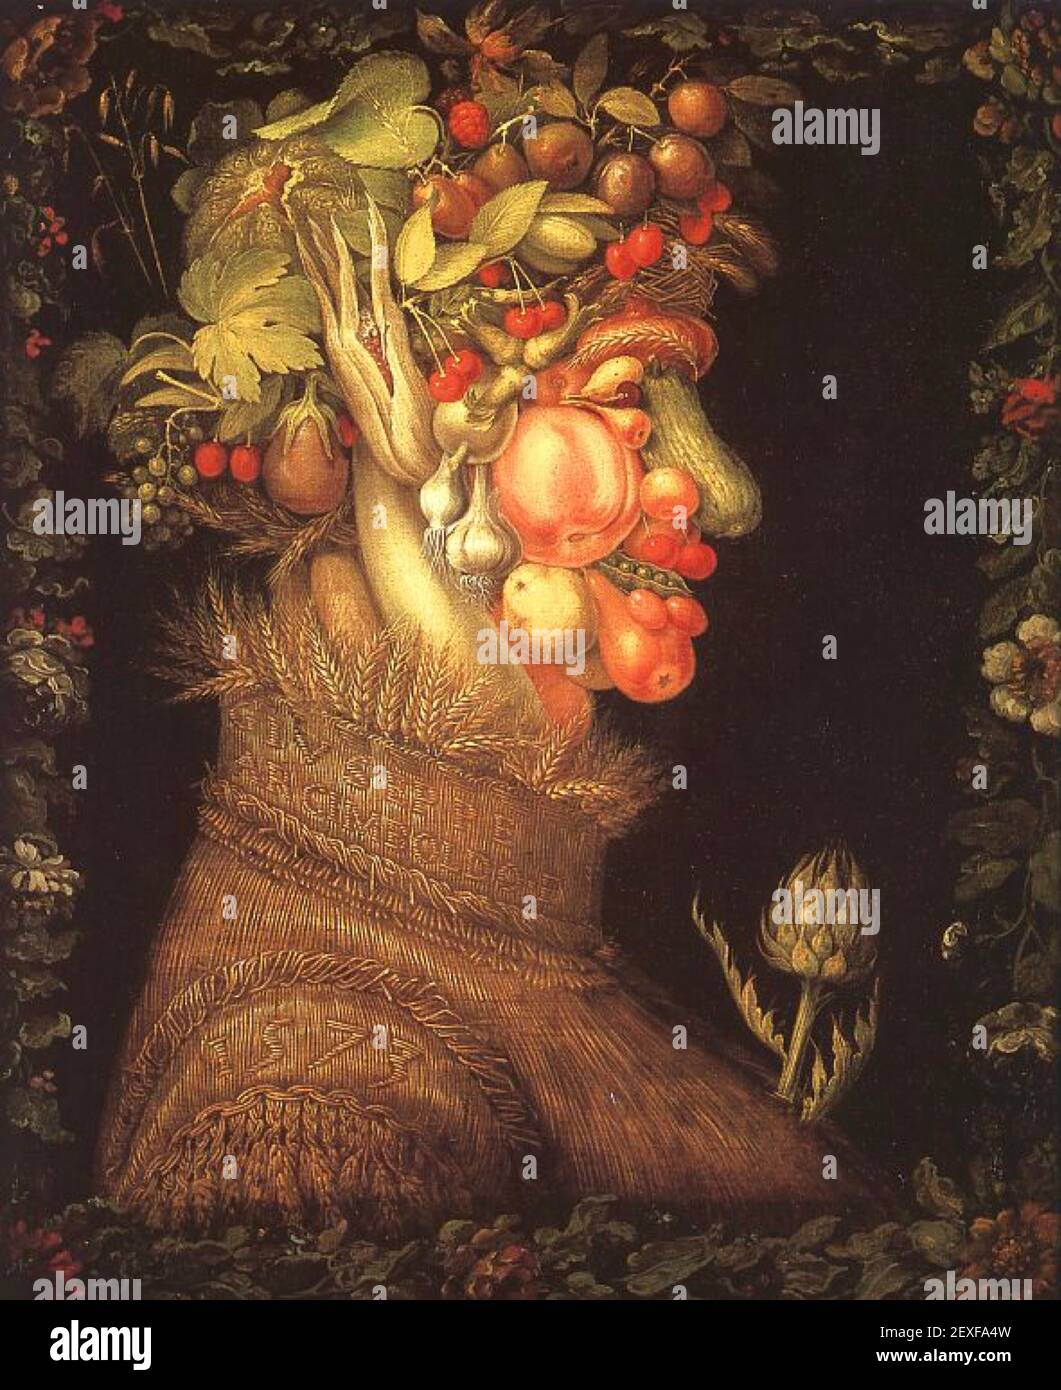 Giuseppe Arcimboldo, « Summer », de four Seasons, 1563. Tête composite originale à base de fruits et légumes de la collection four Seasons. Banque D'Images